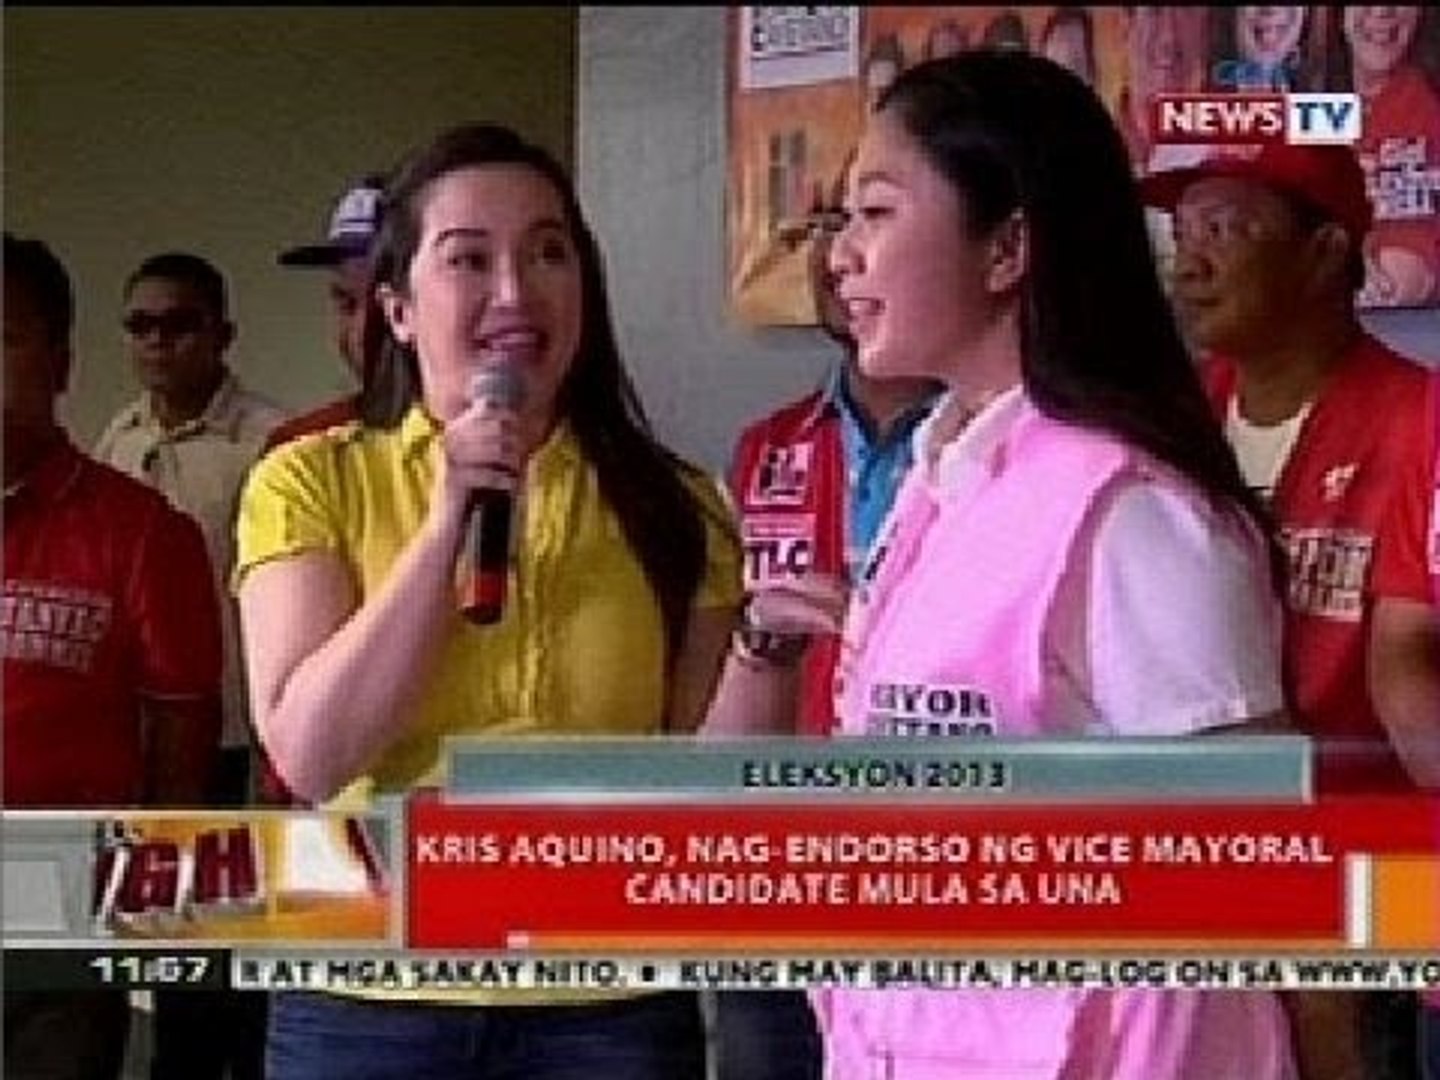 BT: Kris Aquino, nag-endorso ng vice mayorial candidate mula sa UNA